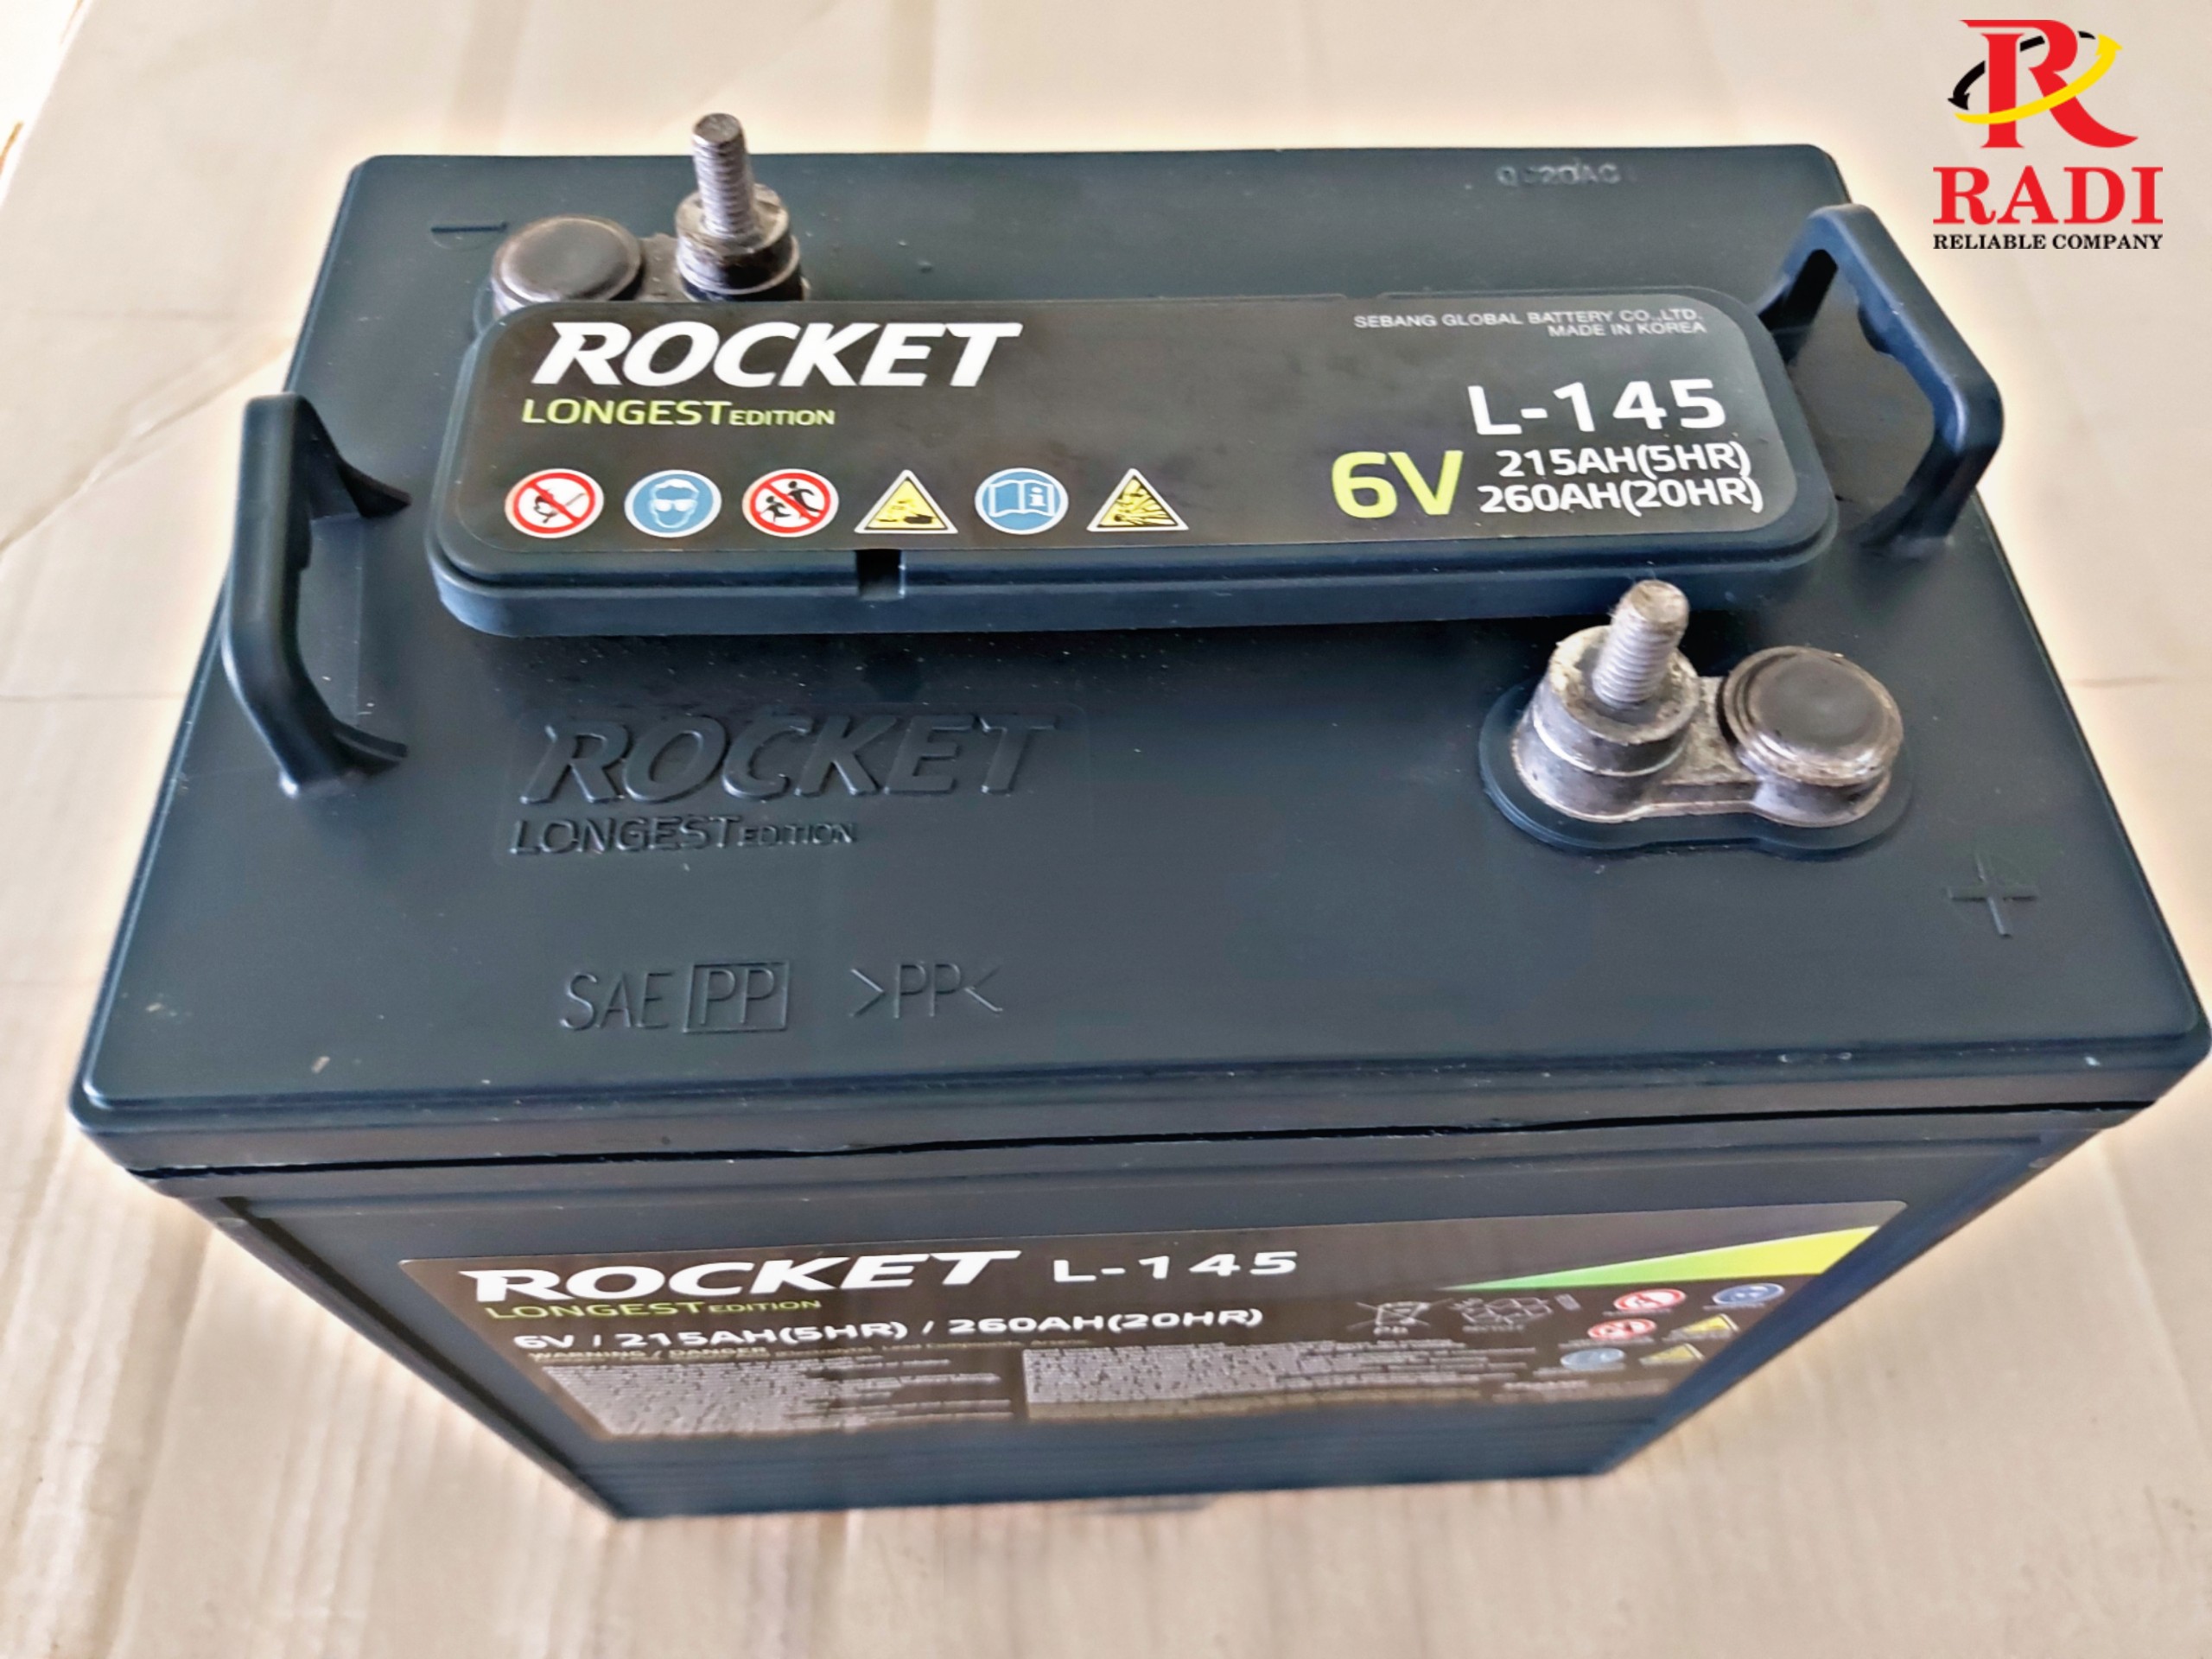 Rocket Longest L-105 Batterie 6 Volt 225Ah